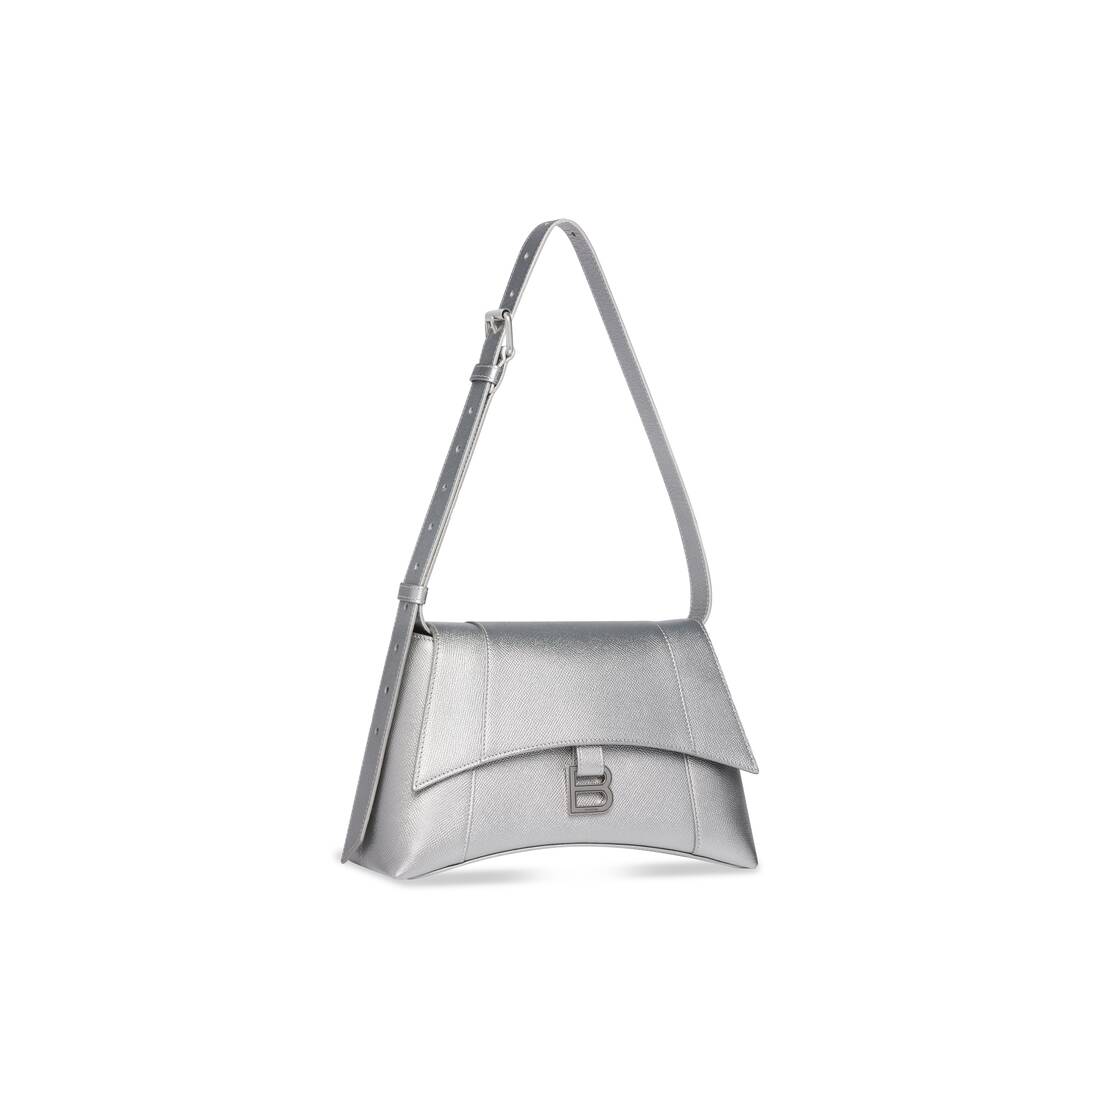 balenciaga hourglass bag silver